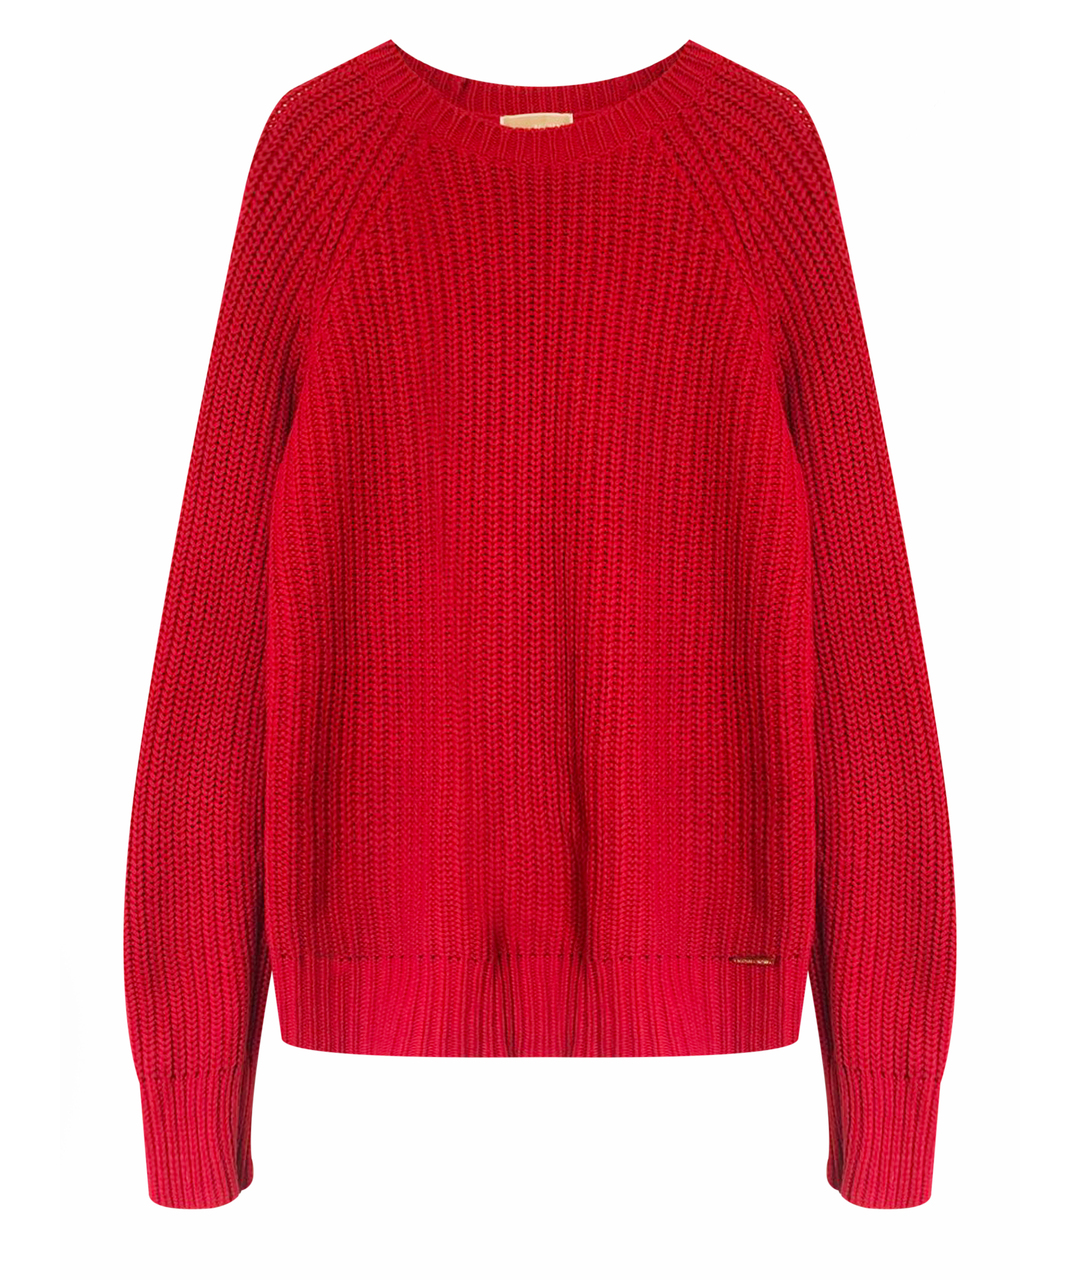 MICHAEL MICHAEL KORS Красный хлопковый джемпер / свитер, фото 1